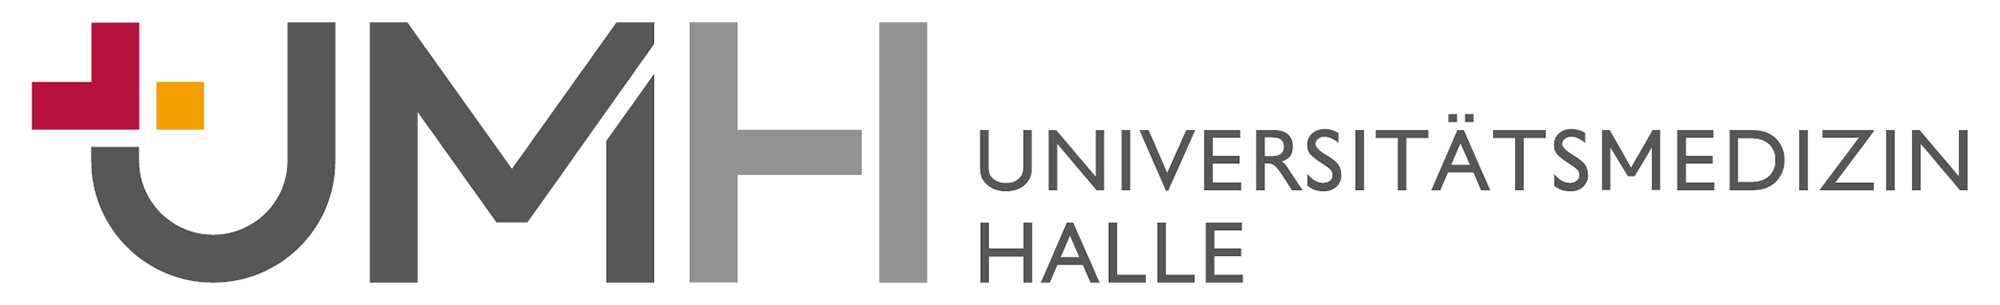 Logo: Universitätsmedizin Halle (Saale)